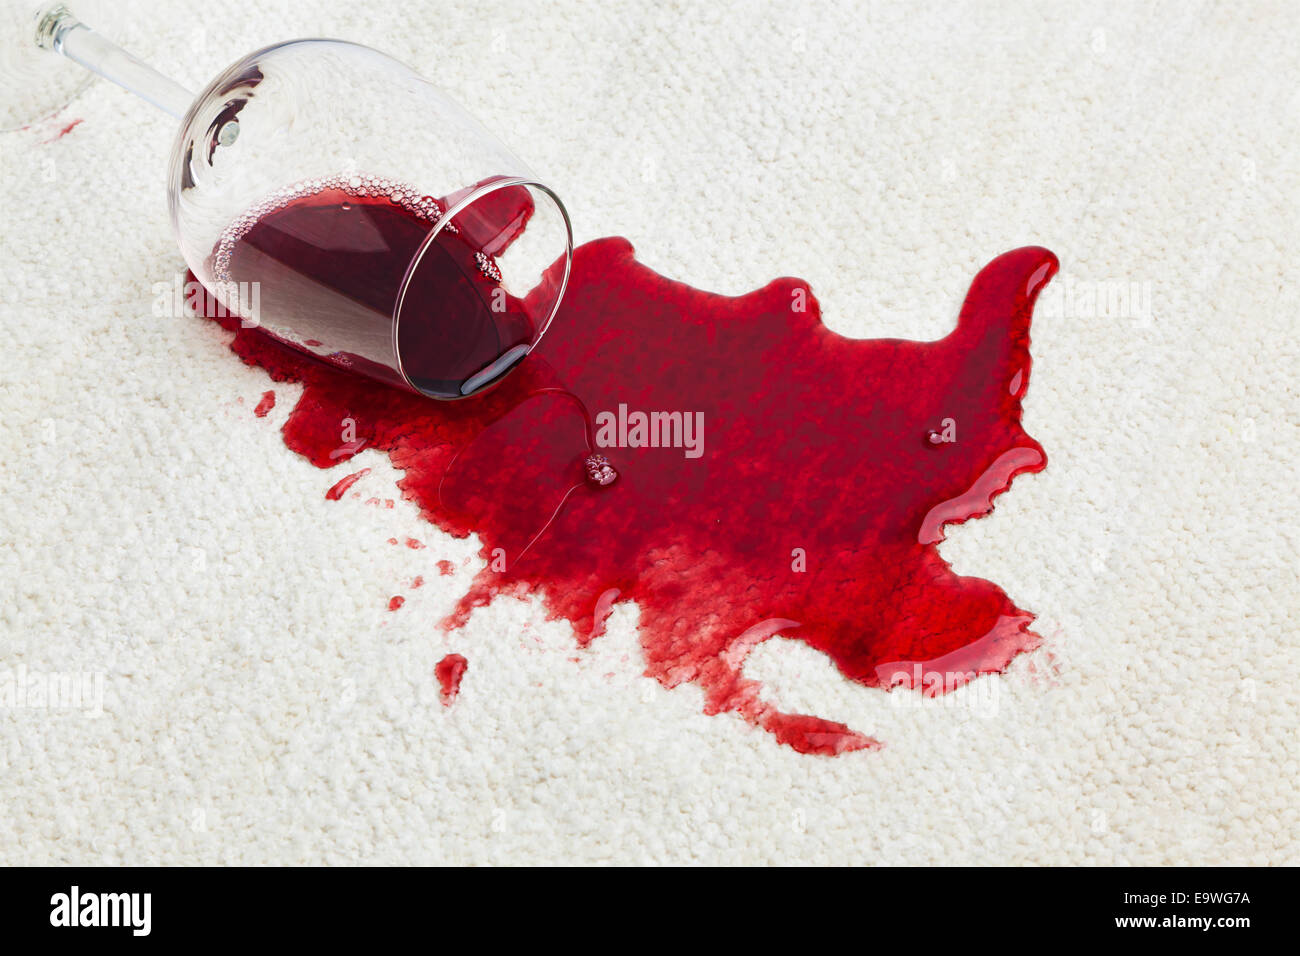 Le vin rouge est renversé sur un tapis. Chuté au verre Banque D'Images